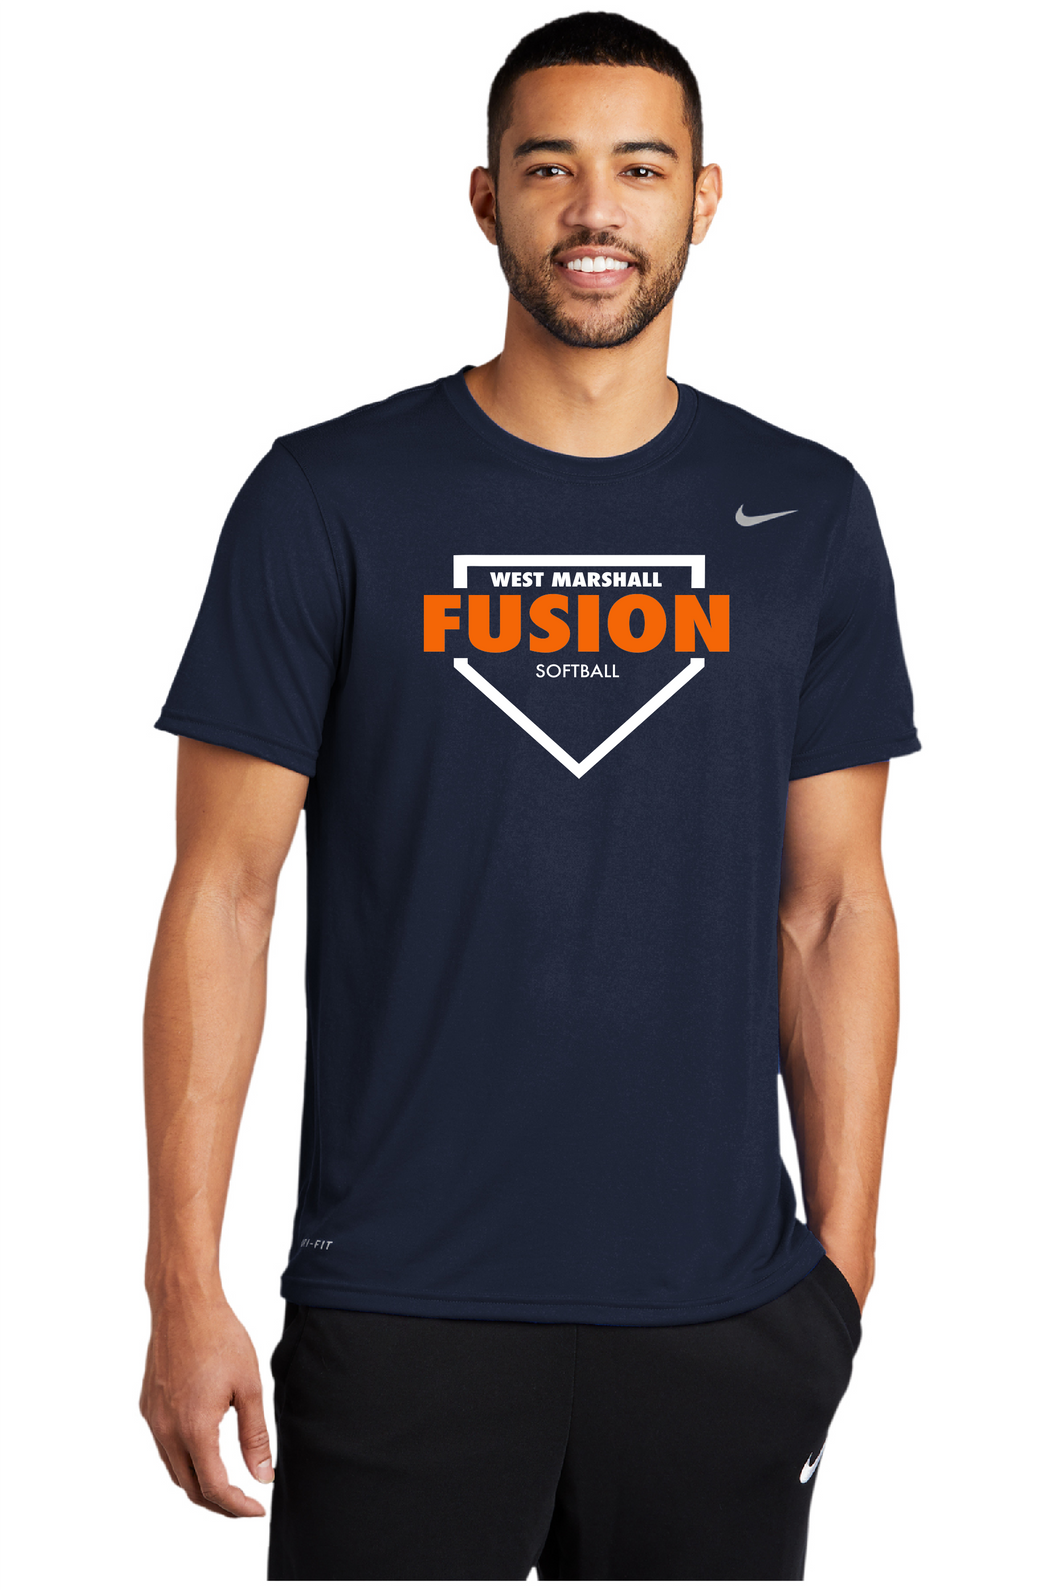 Fusion Softball Homeplate Nike Tee